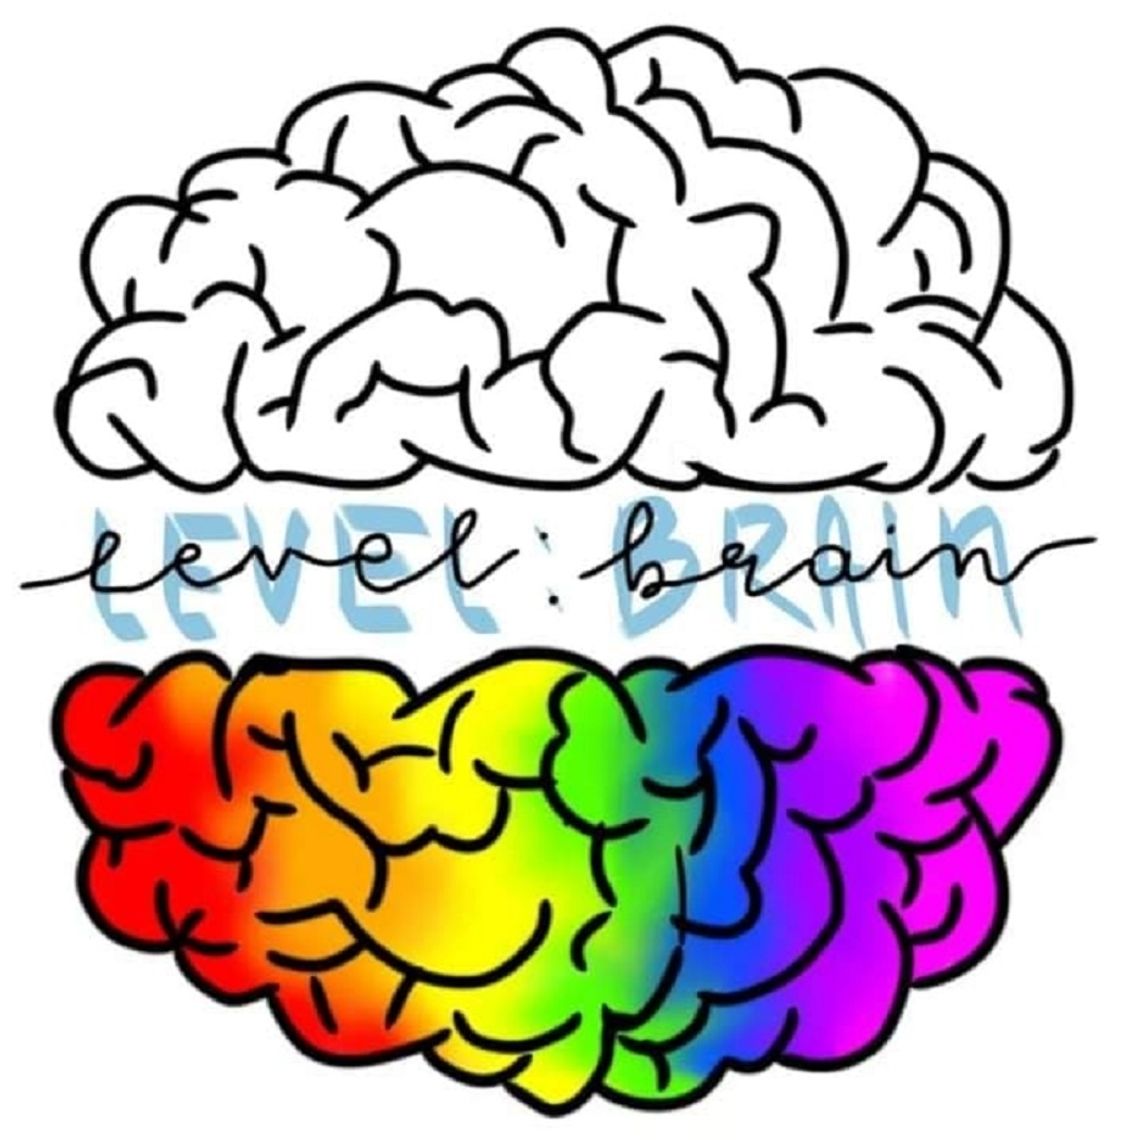 Level: Brain - młodzież z Zamościa działa społecznie